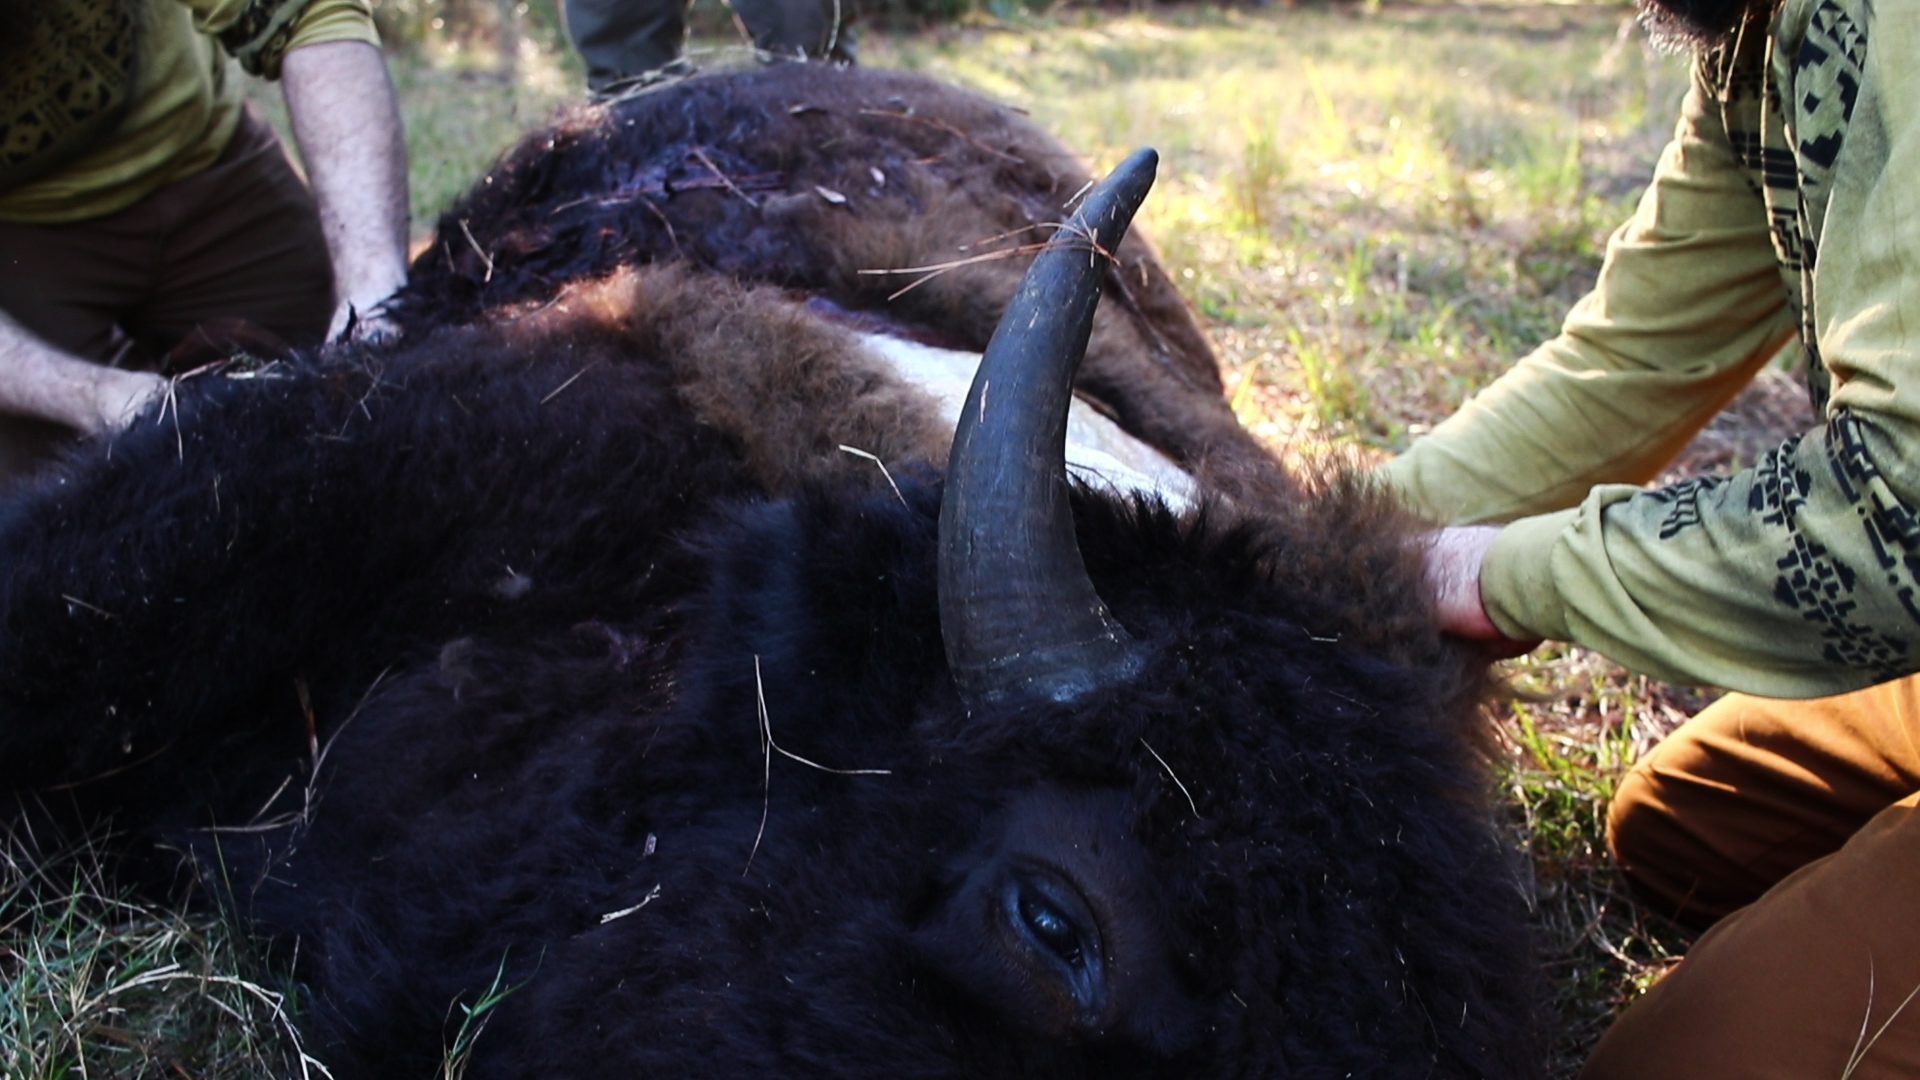 Bison Hunters skin a bison